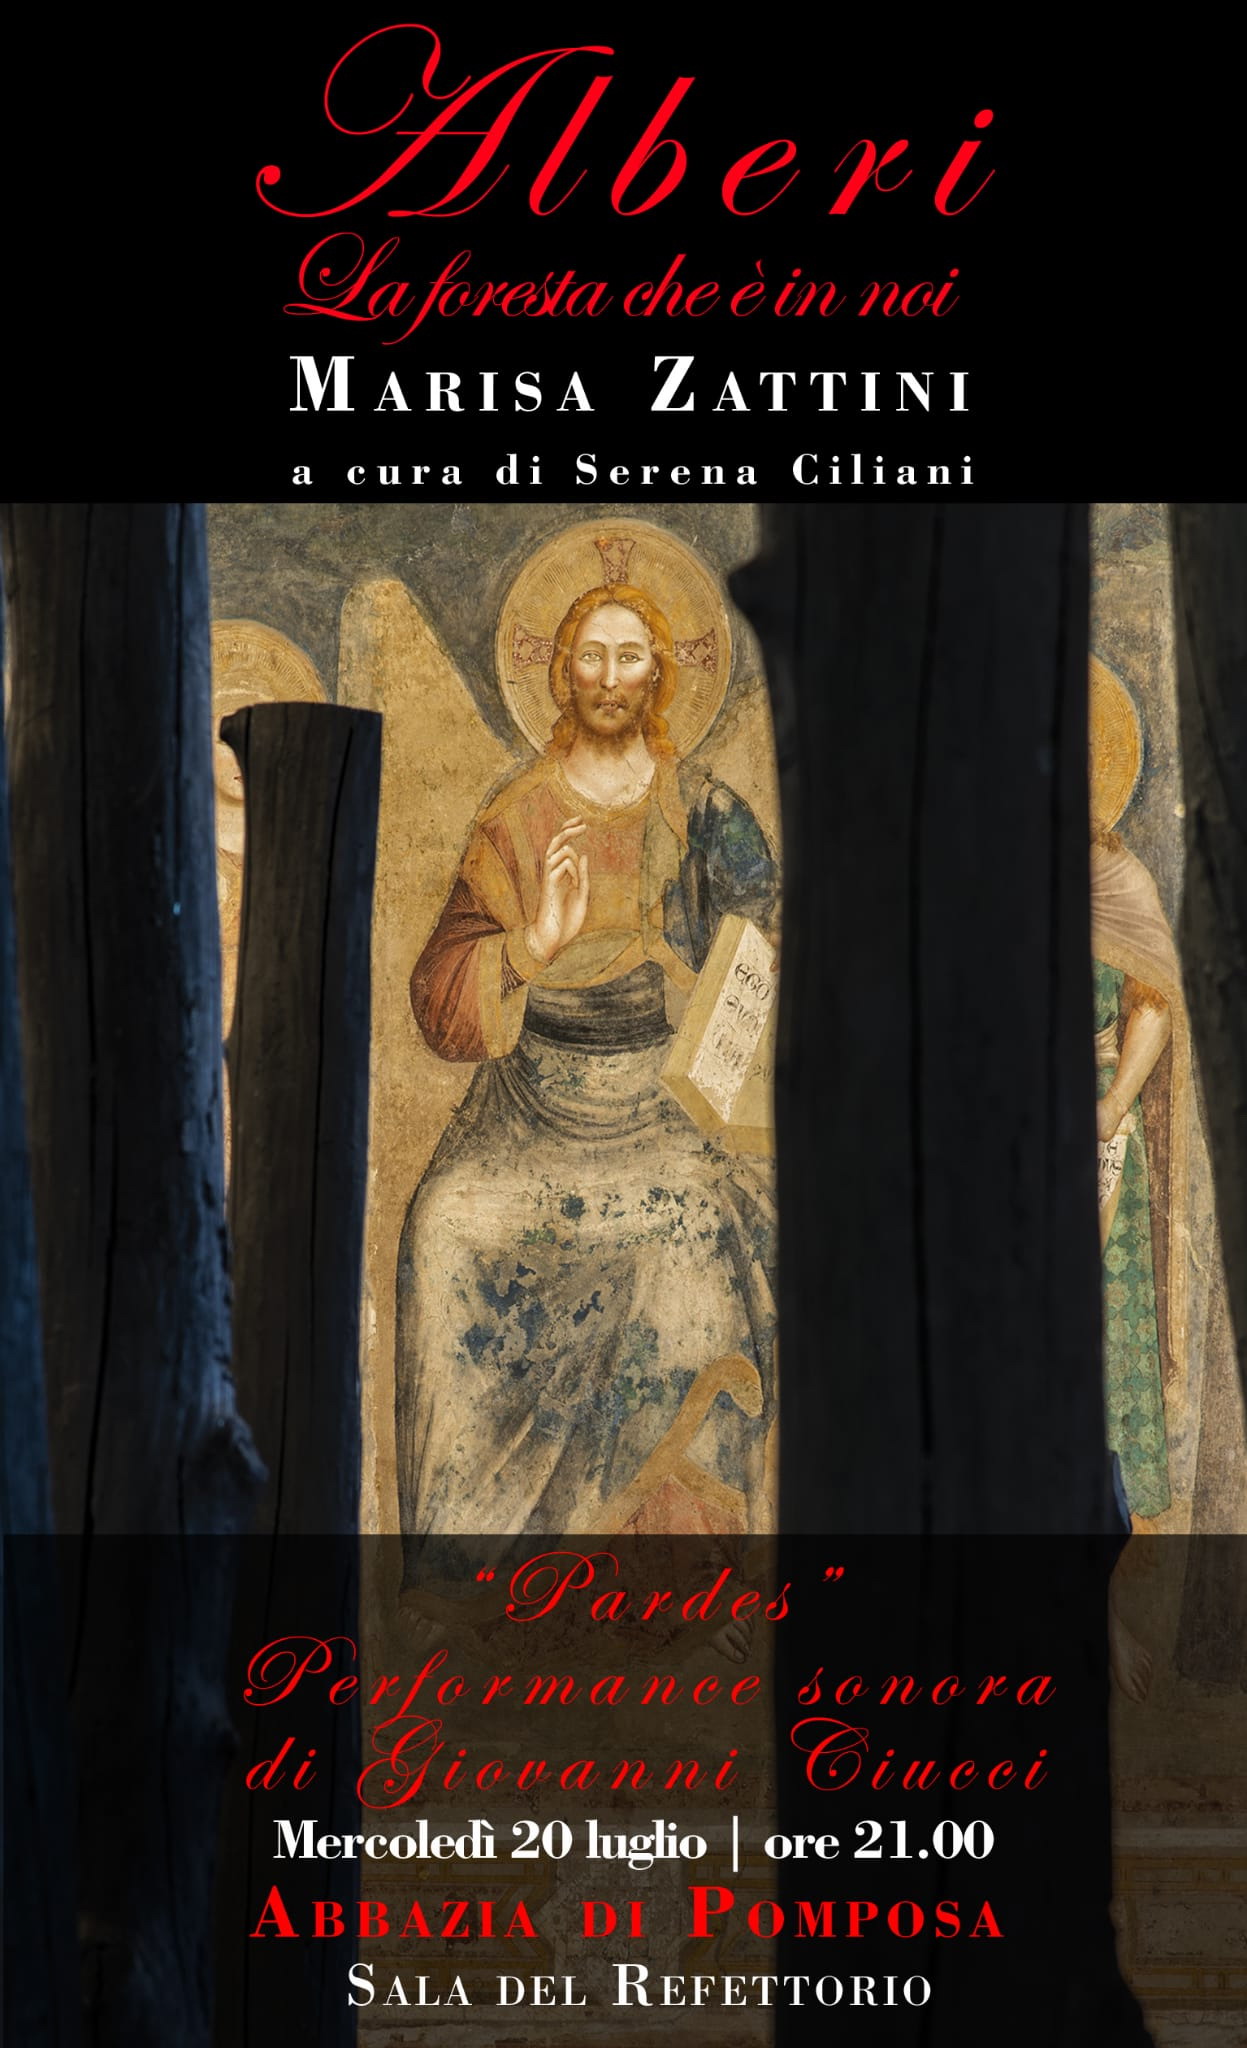 Performance sonora  di Giovanni Ciucci "Pardes" dedicata alla mostra  Alberi - La foresta che è in noi di Marisa Zattini